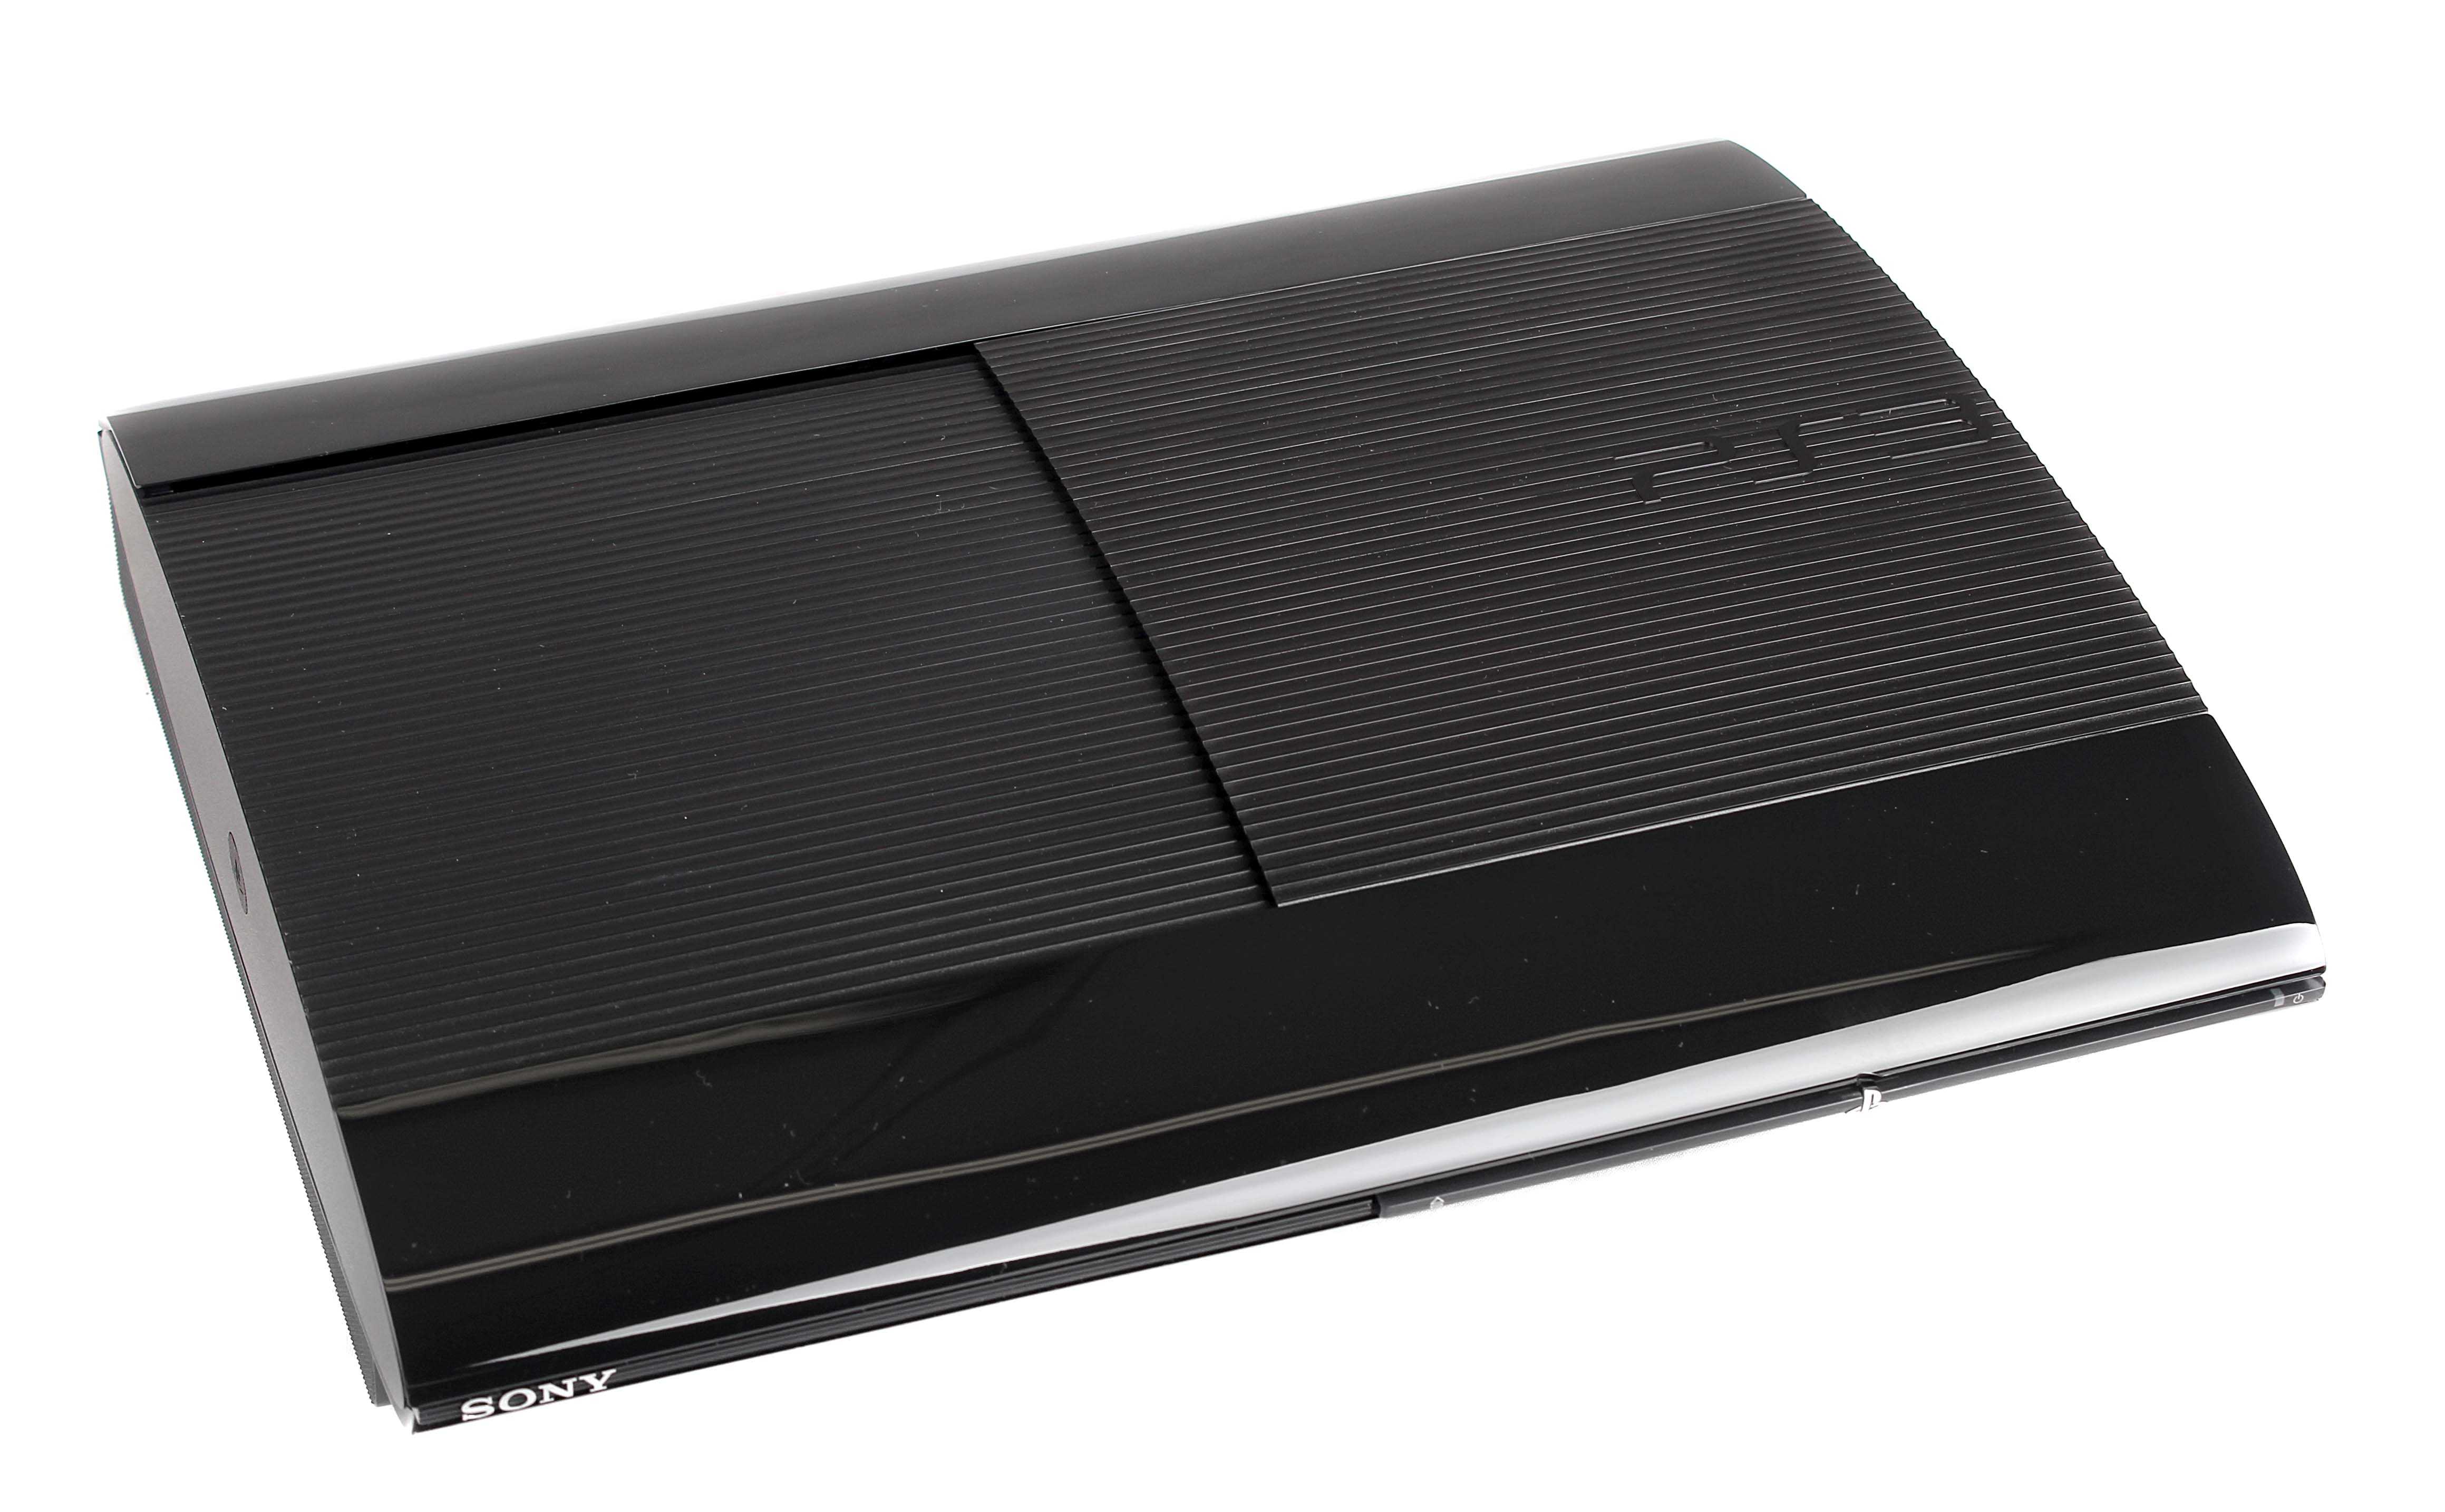 Игровая приставка sony playstation 3 super slim 12gb cech-4308a — купить, цена и характеристики, отзывы